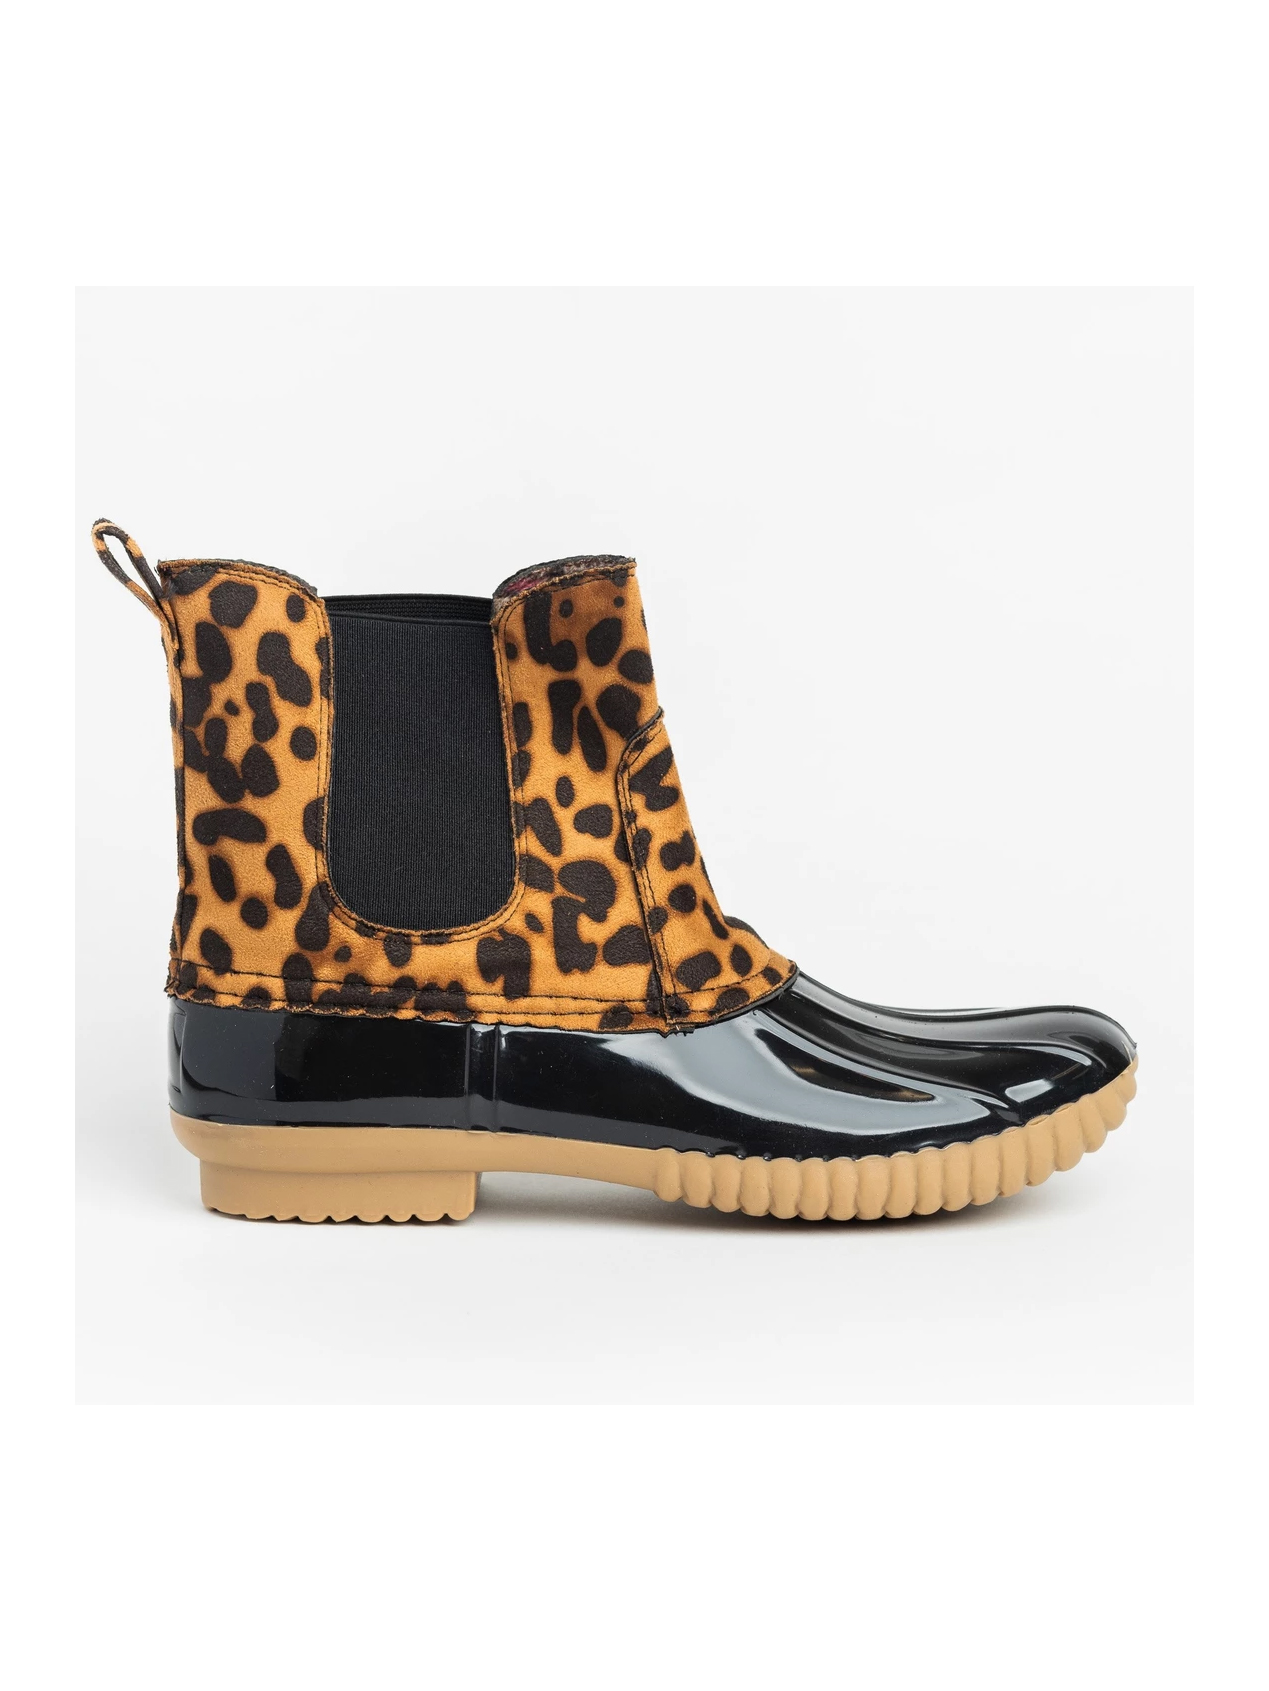 leopard duck boots wholesale